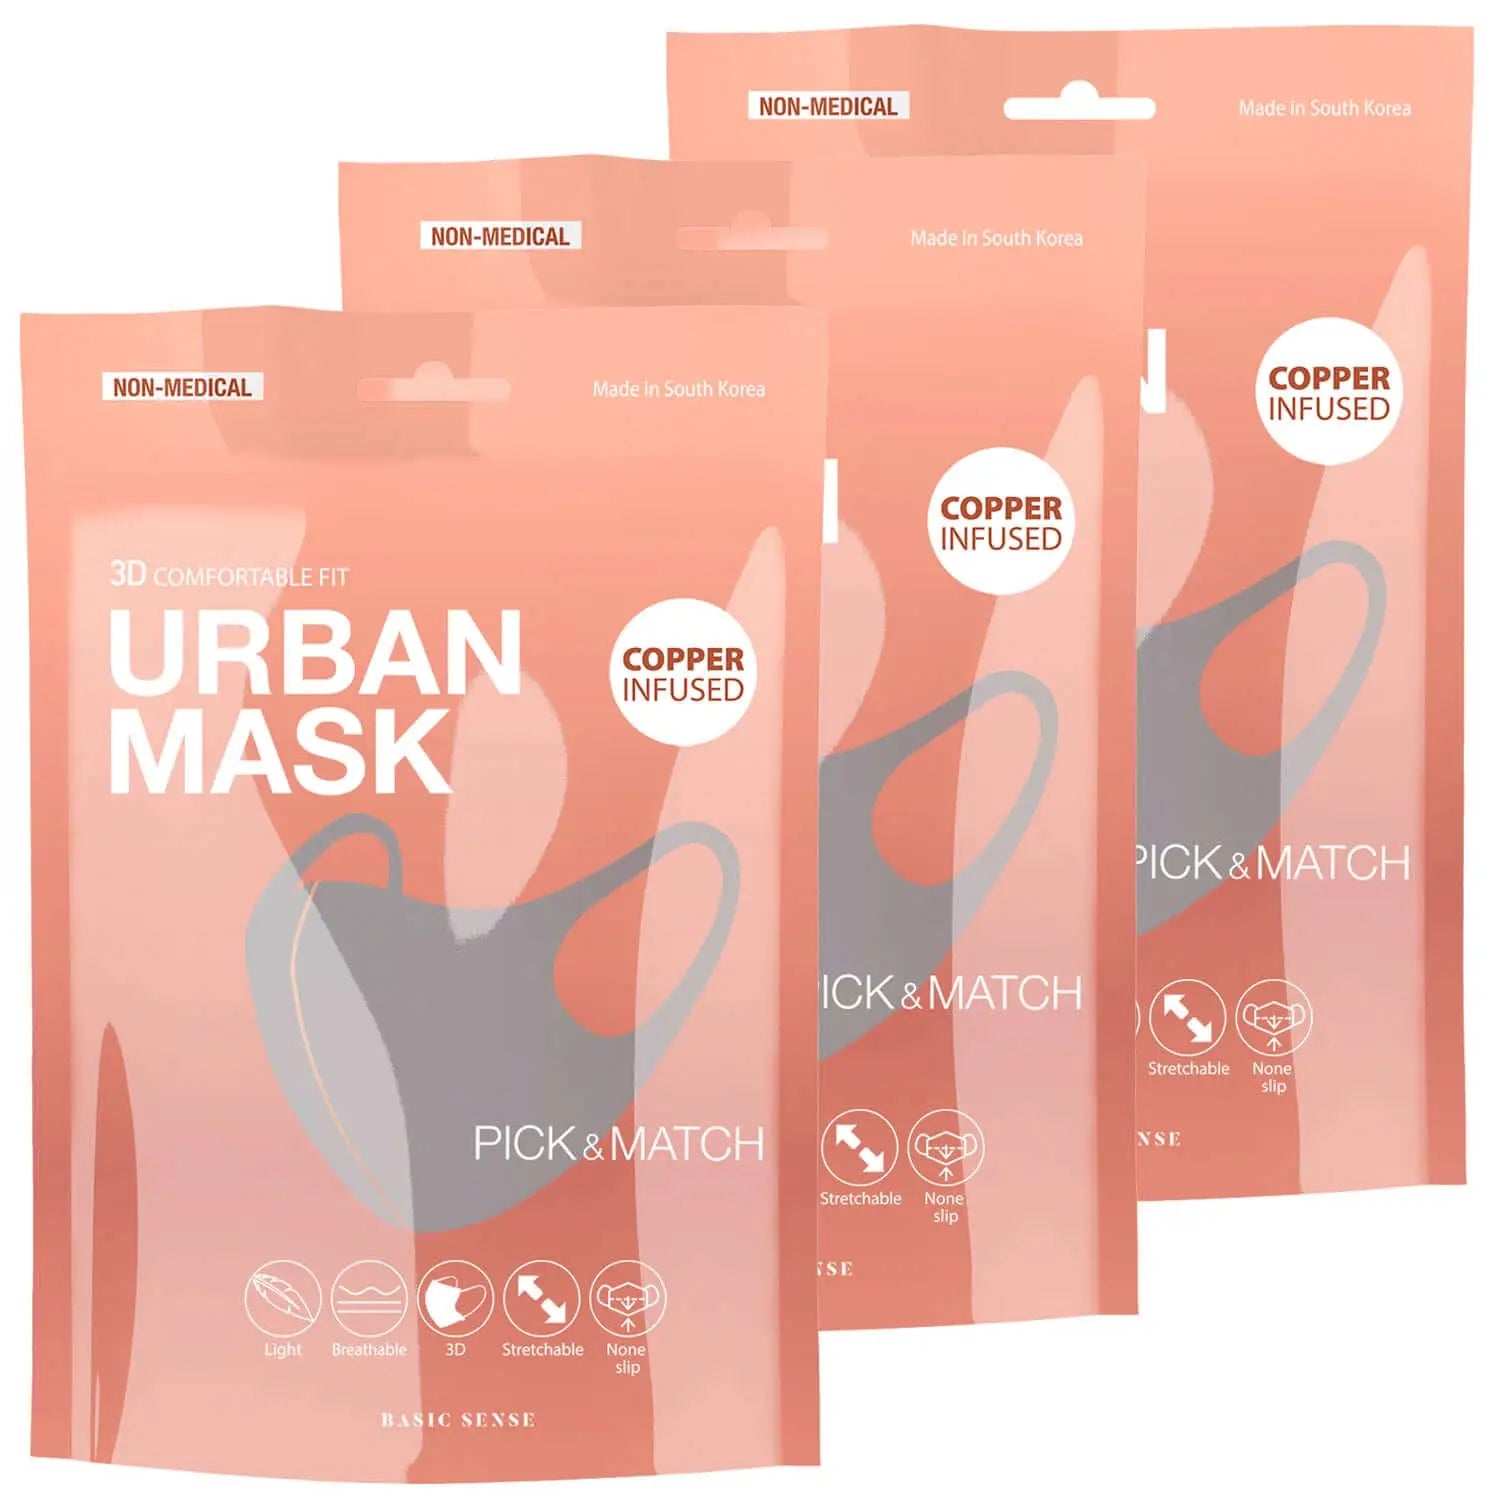 3 pack of copper infused face masks for men - 3D Copper-Infused Face Mask Covering for Stylish Protection